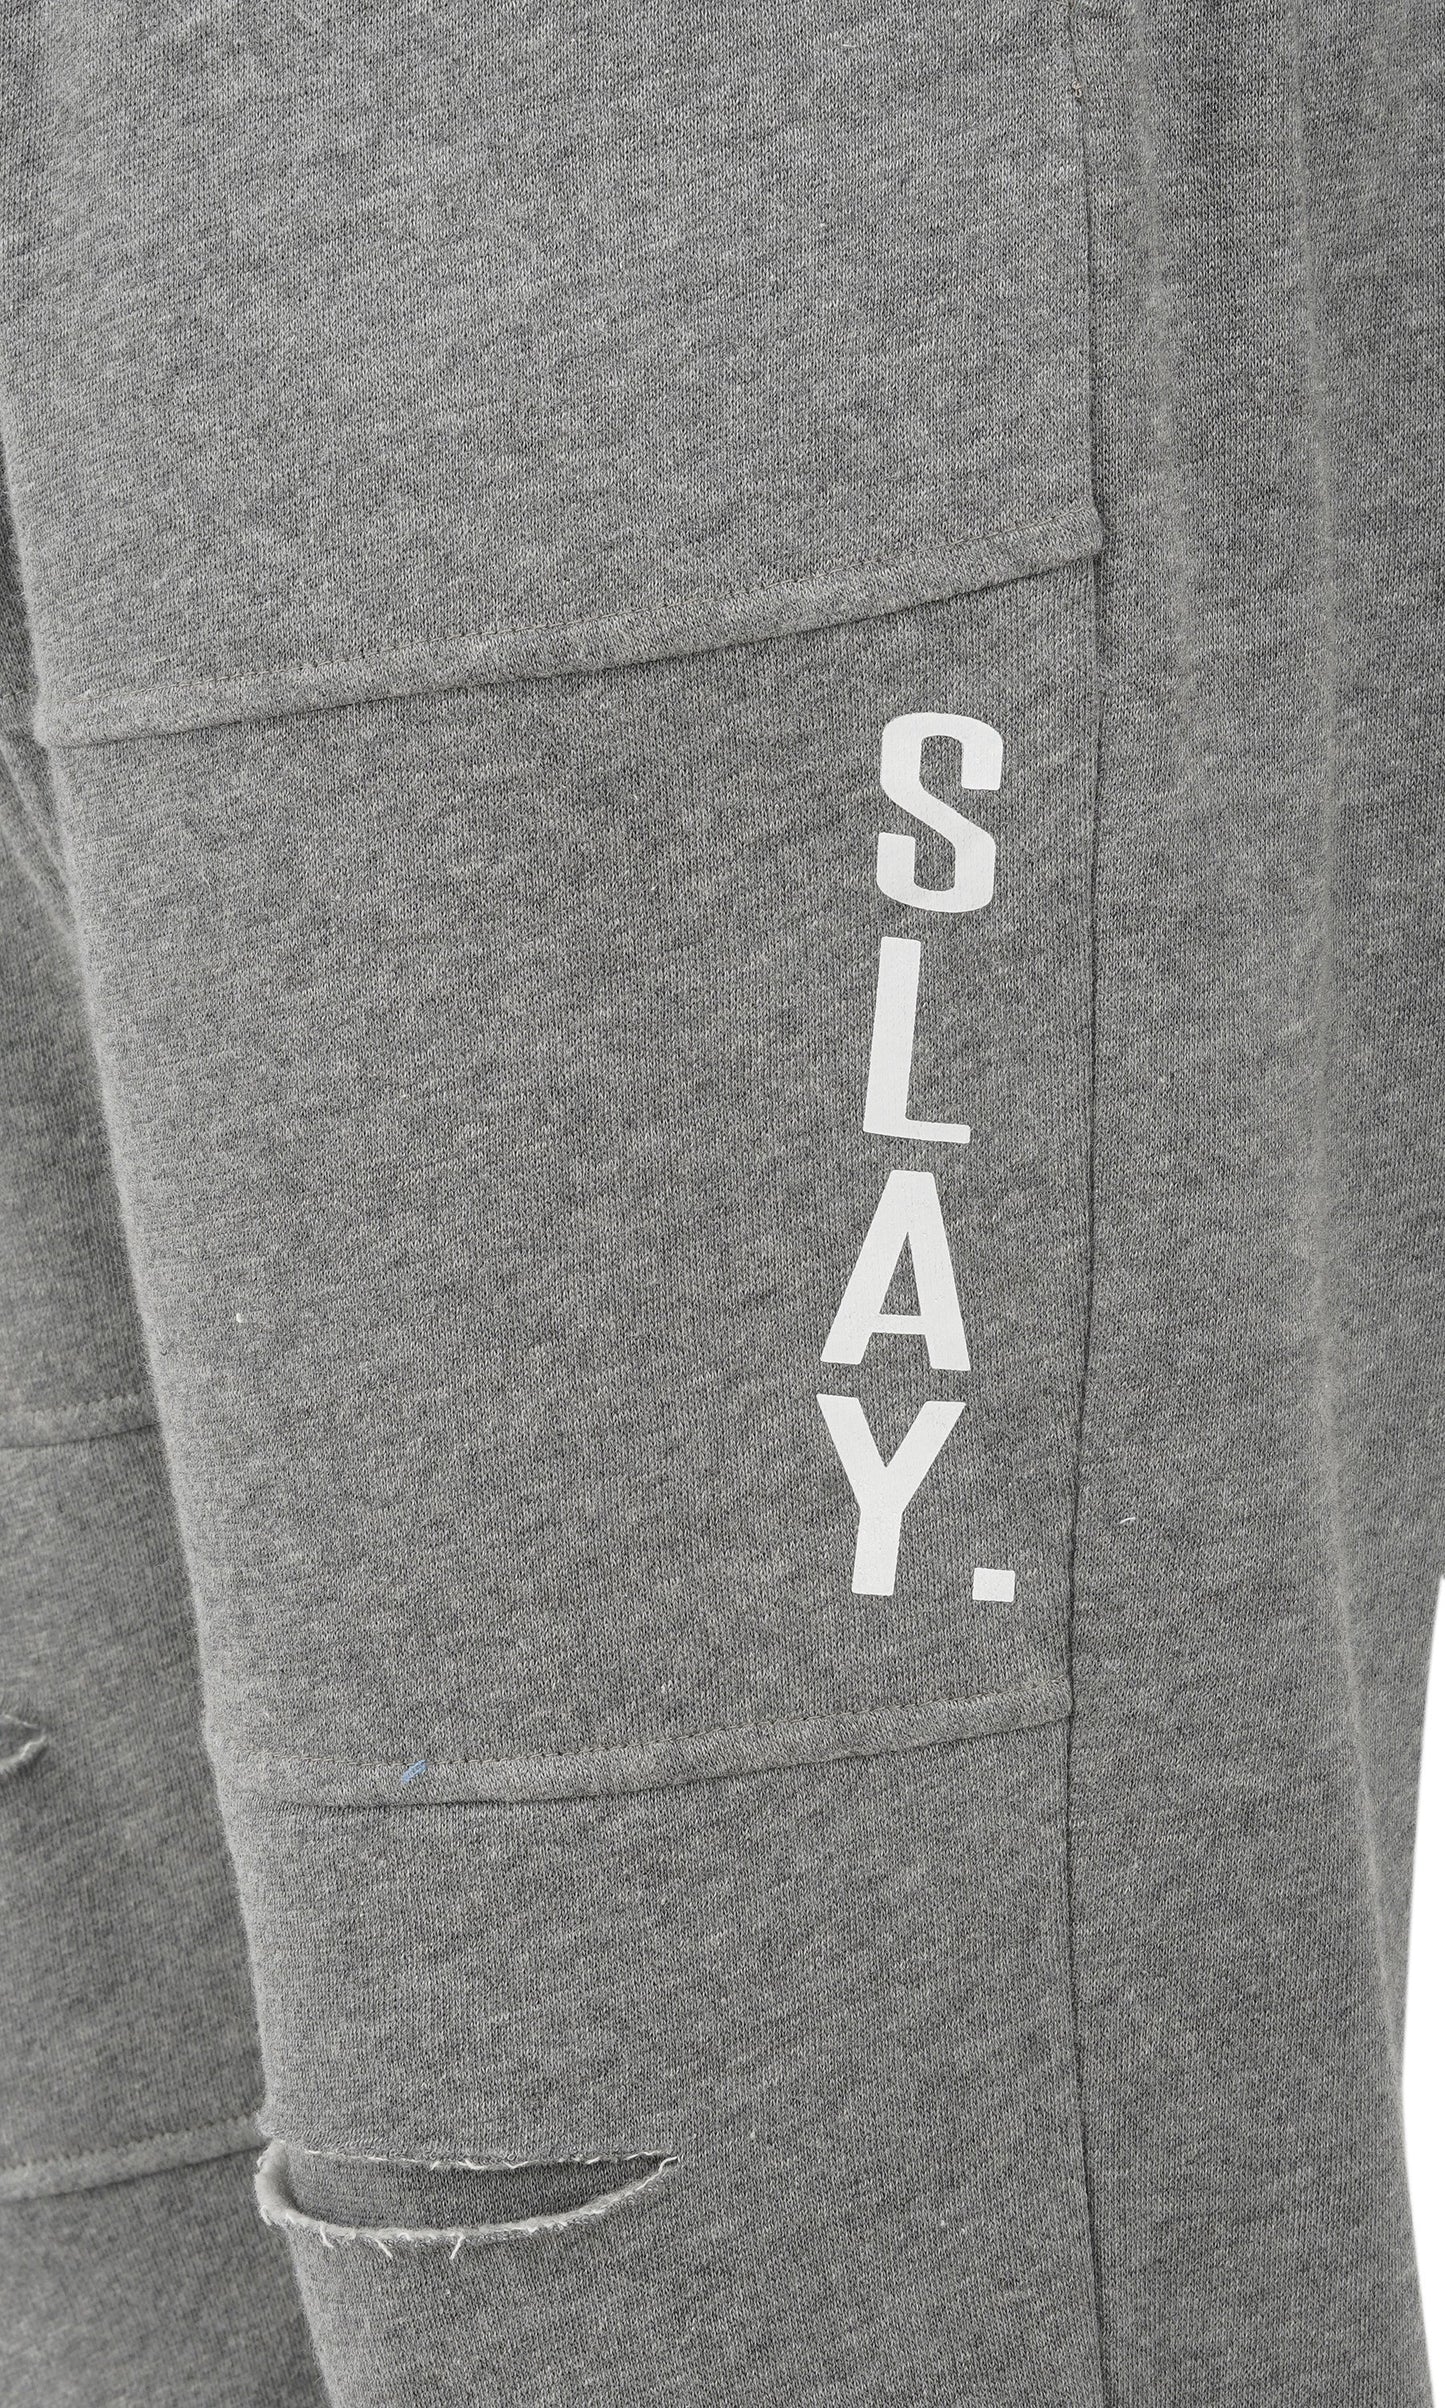 SLAY. Men's Light Grey Joggers-clothing-to-slay.myshopify.com-Joggers